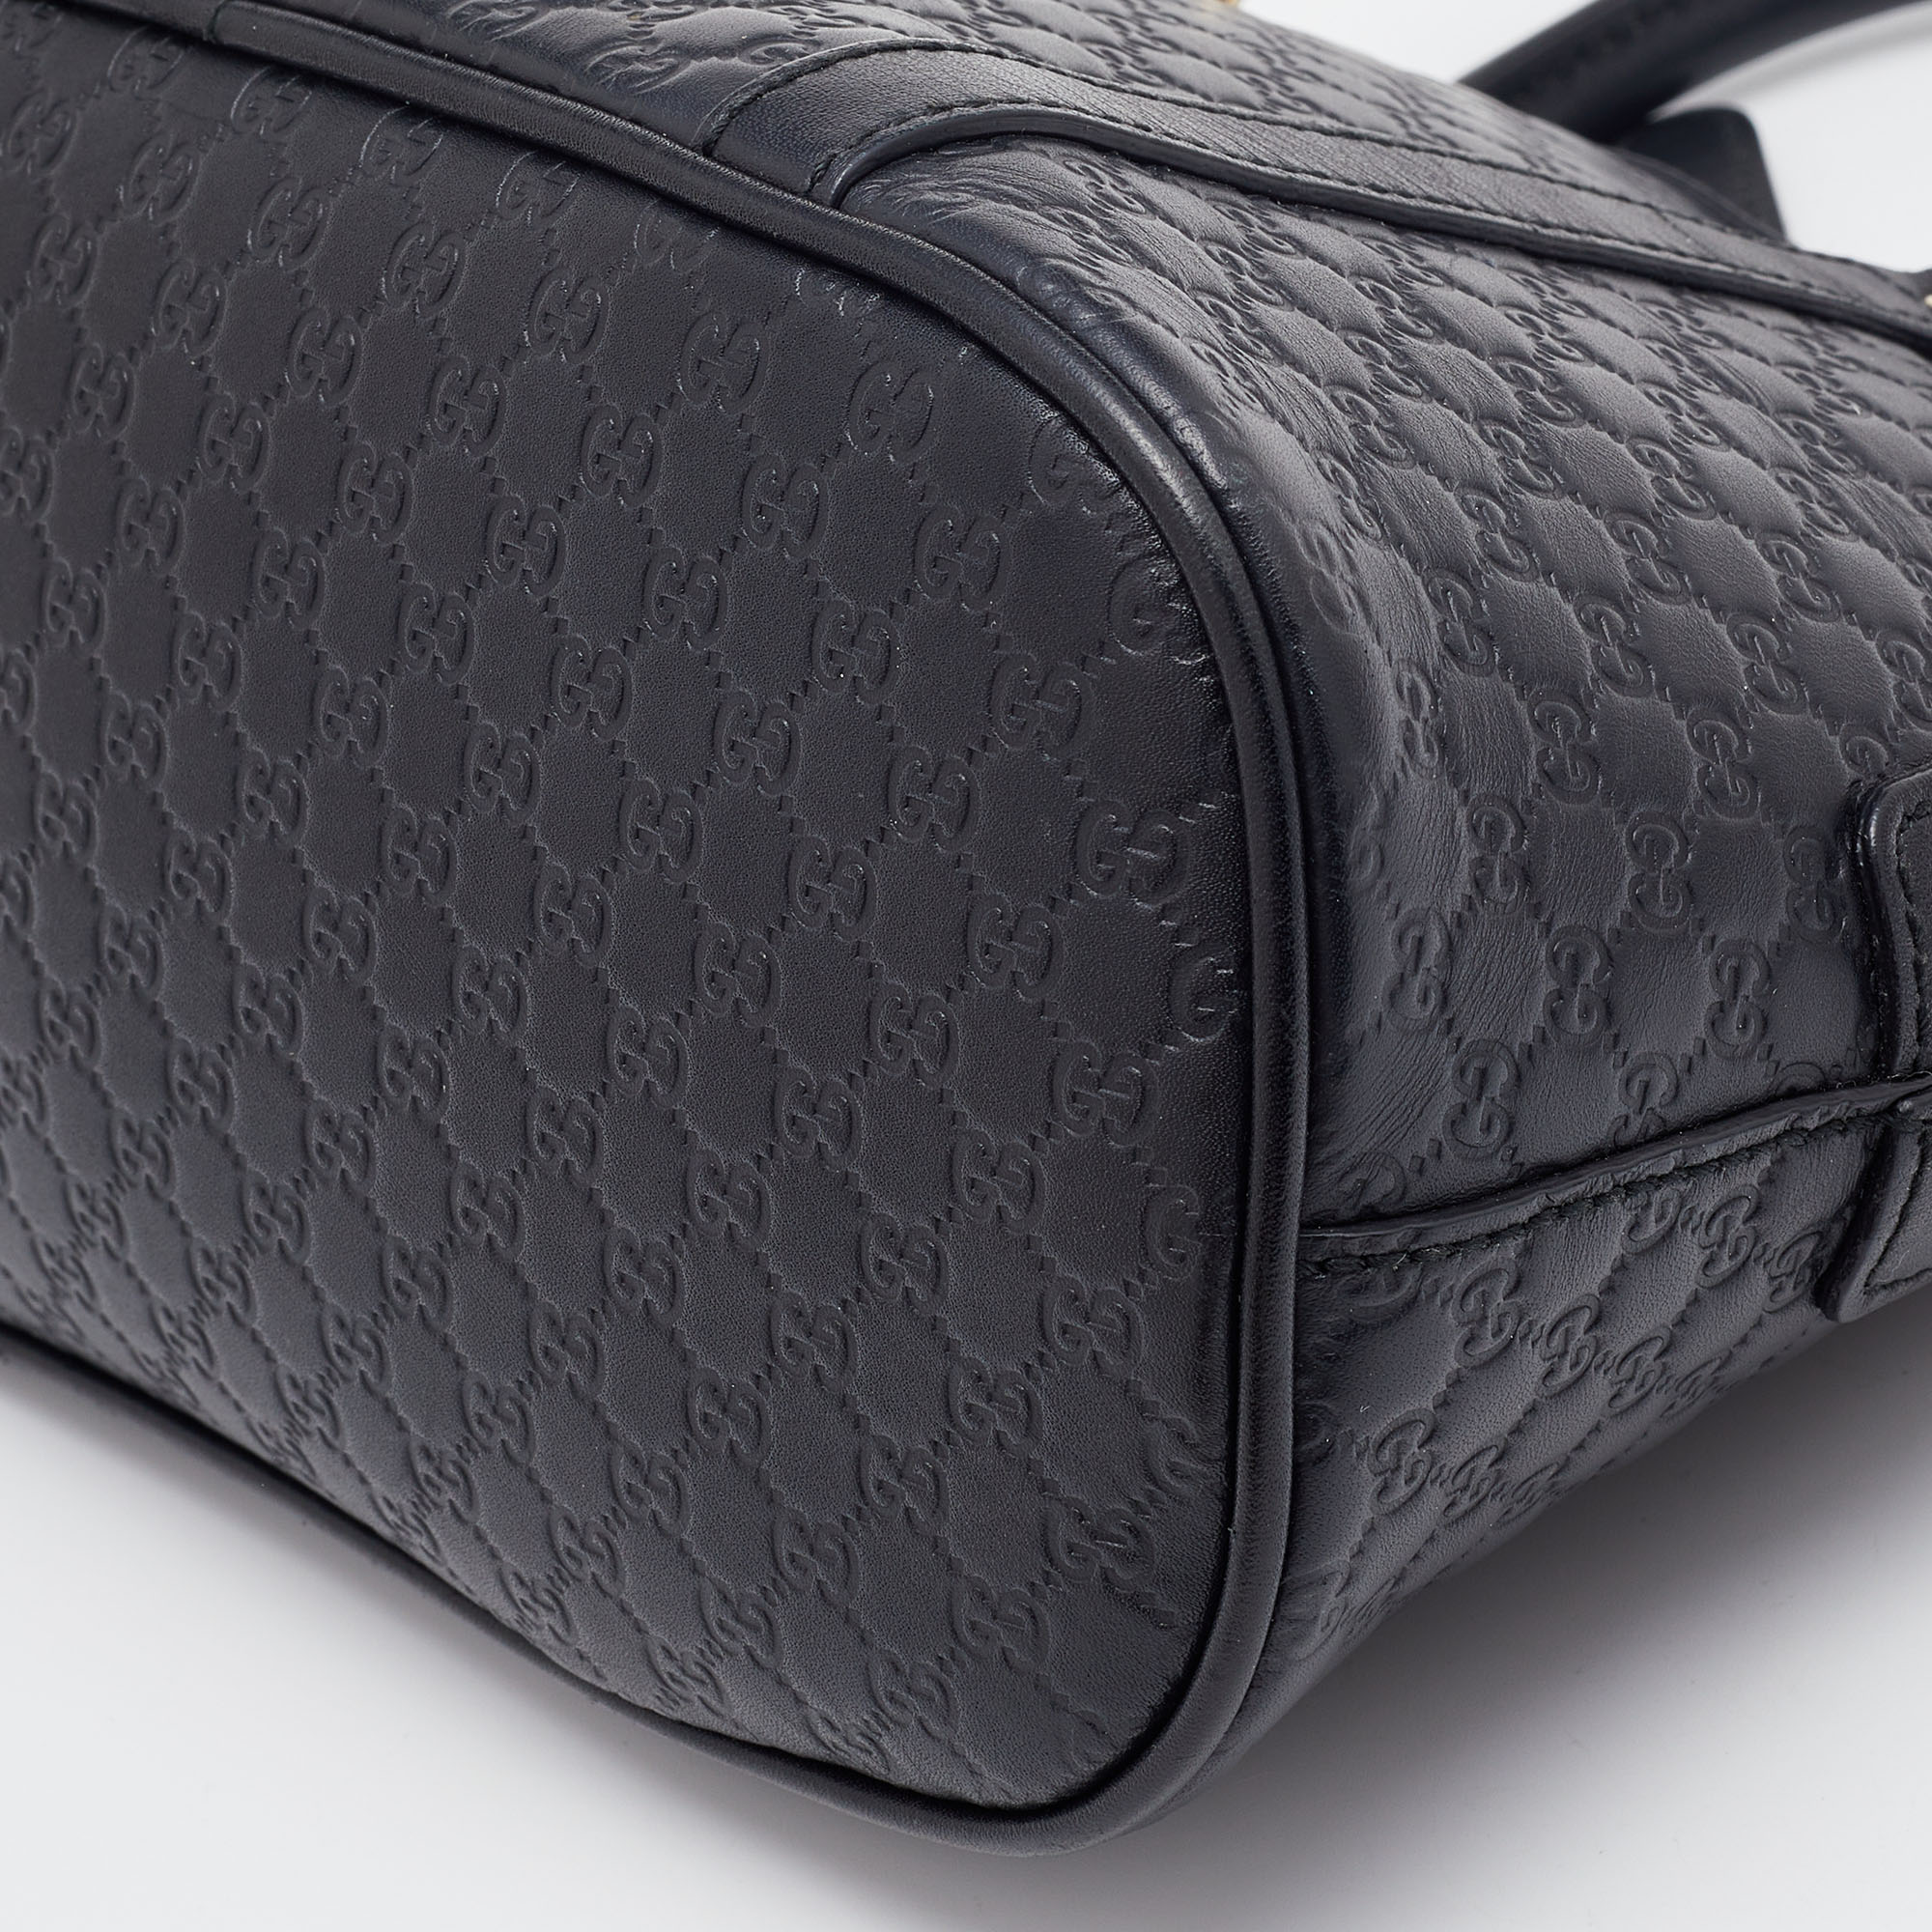 Gucci Black GG Microguccissima Dome Satchel Mini Bag – The Closet